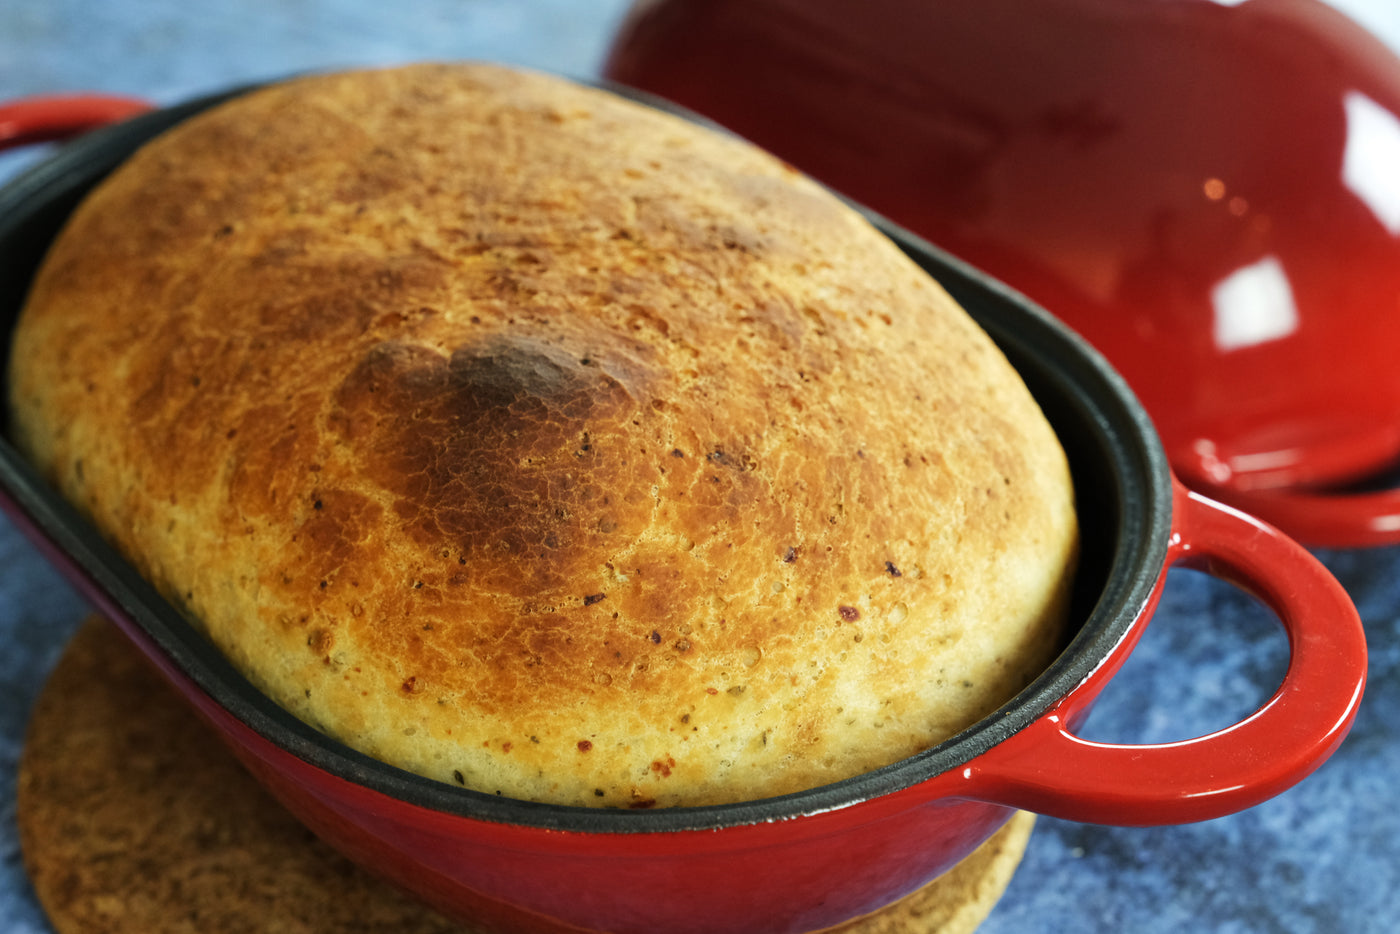 Emaye Dökme Demir Kapaklı Ekmek Tavası, Kırmızı, Fırında Pişirmeye Uygun Form, Artisan Ekmek Seti - Somun Tavası